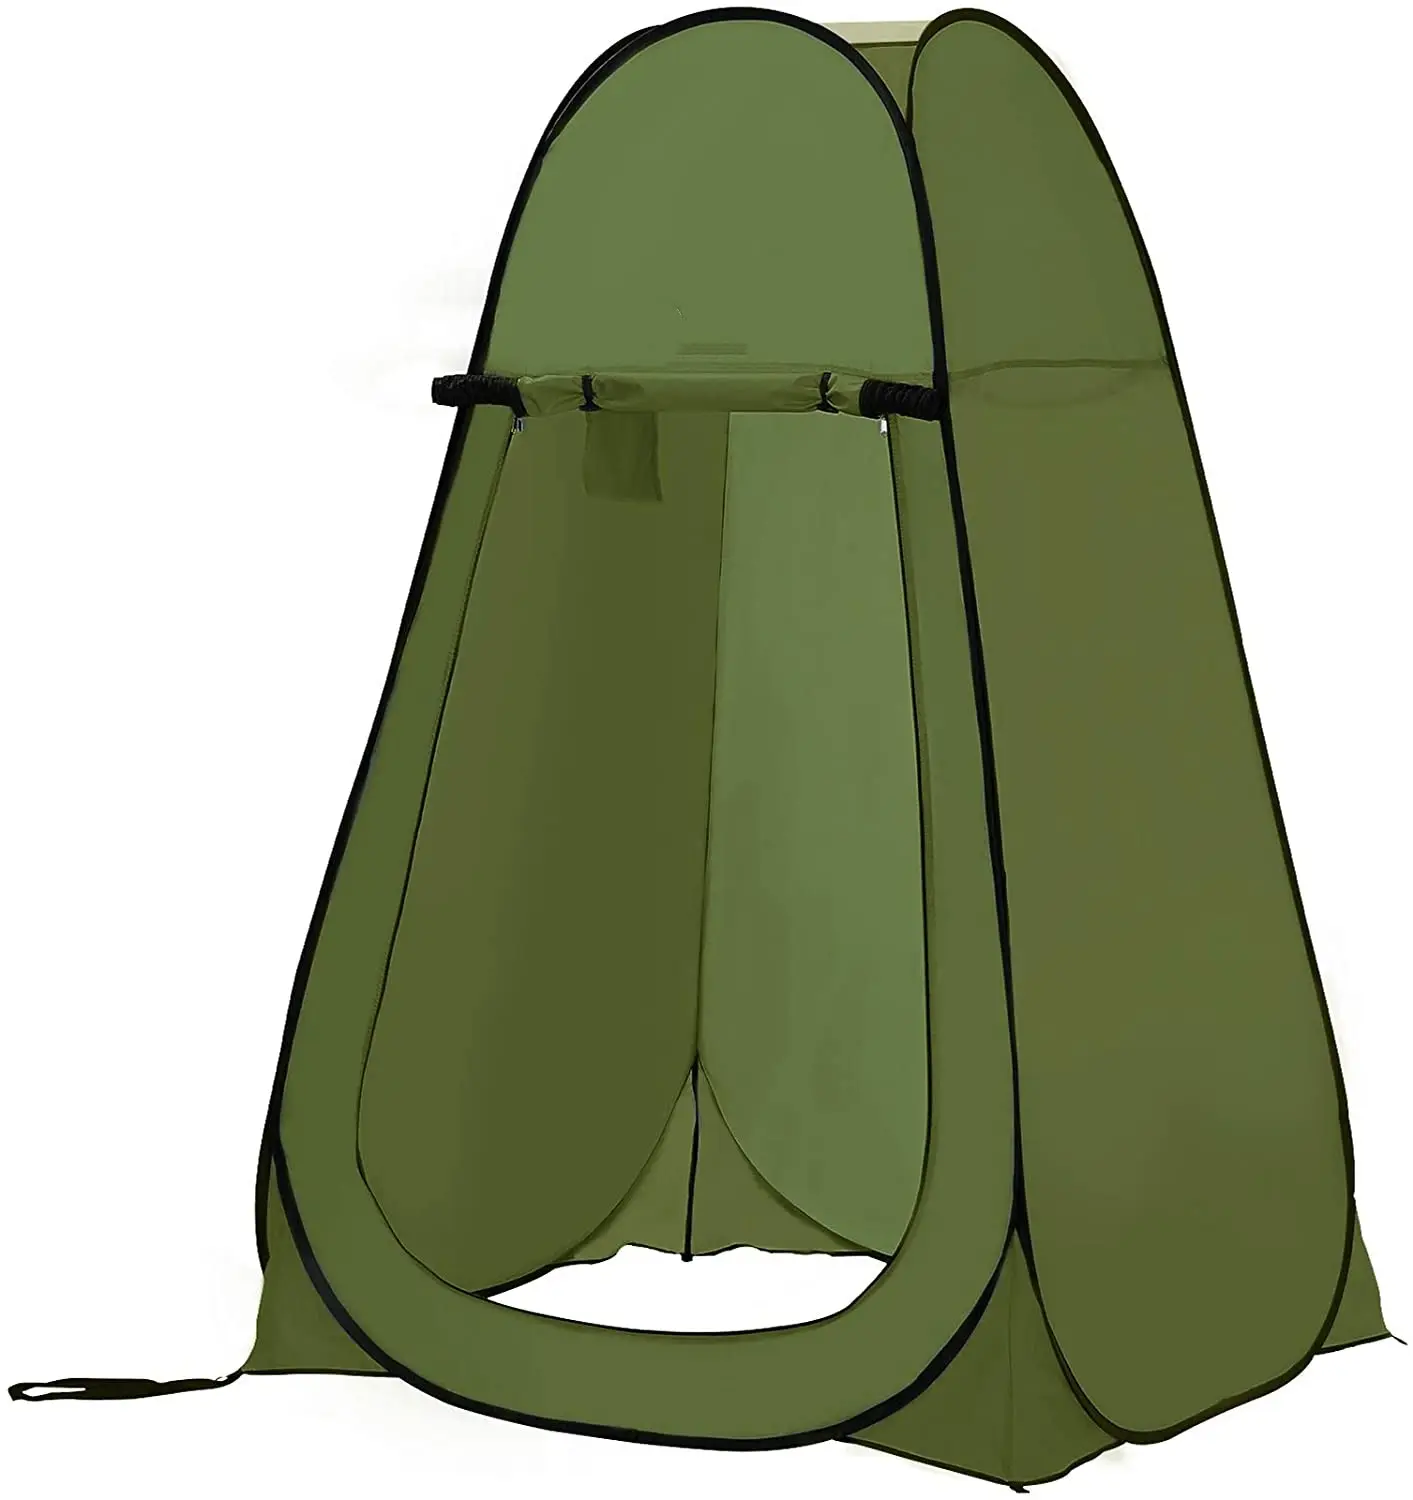 Chuveiro portátil woqi pop-up, tenda para acampamento ao ar livre, caminhadas, praia, banheiro